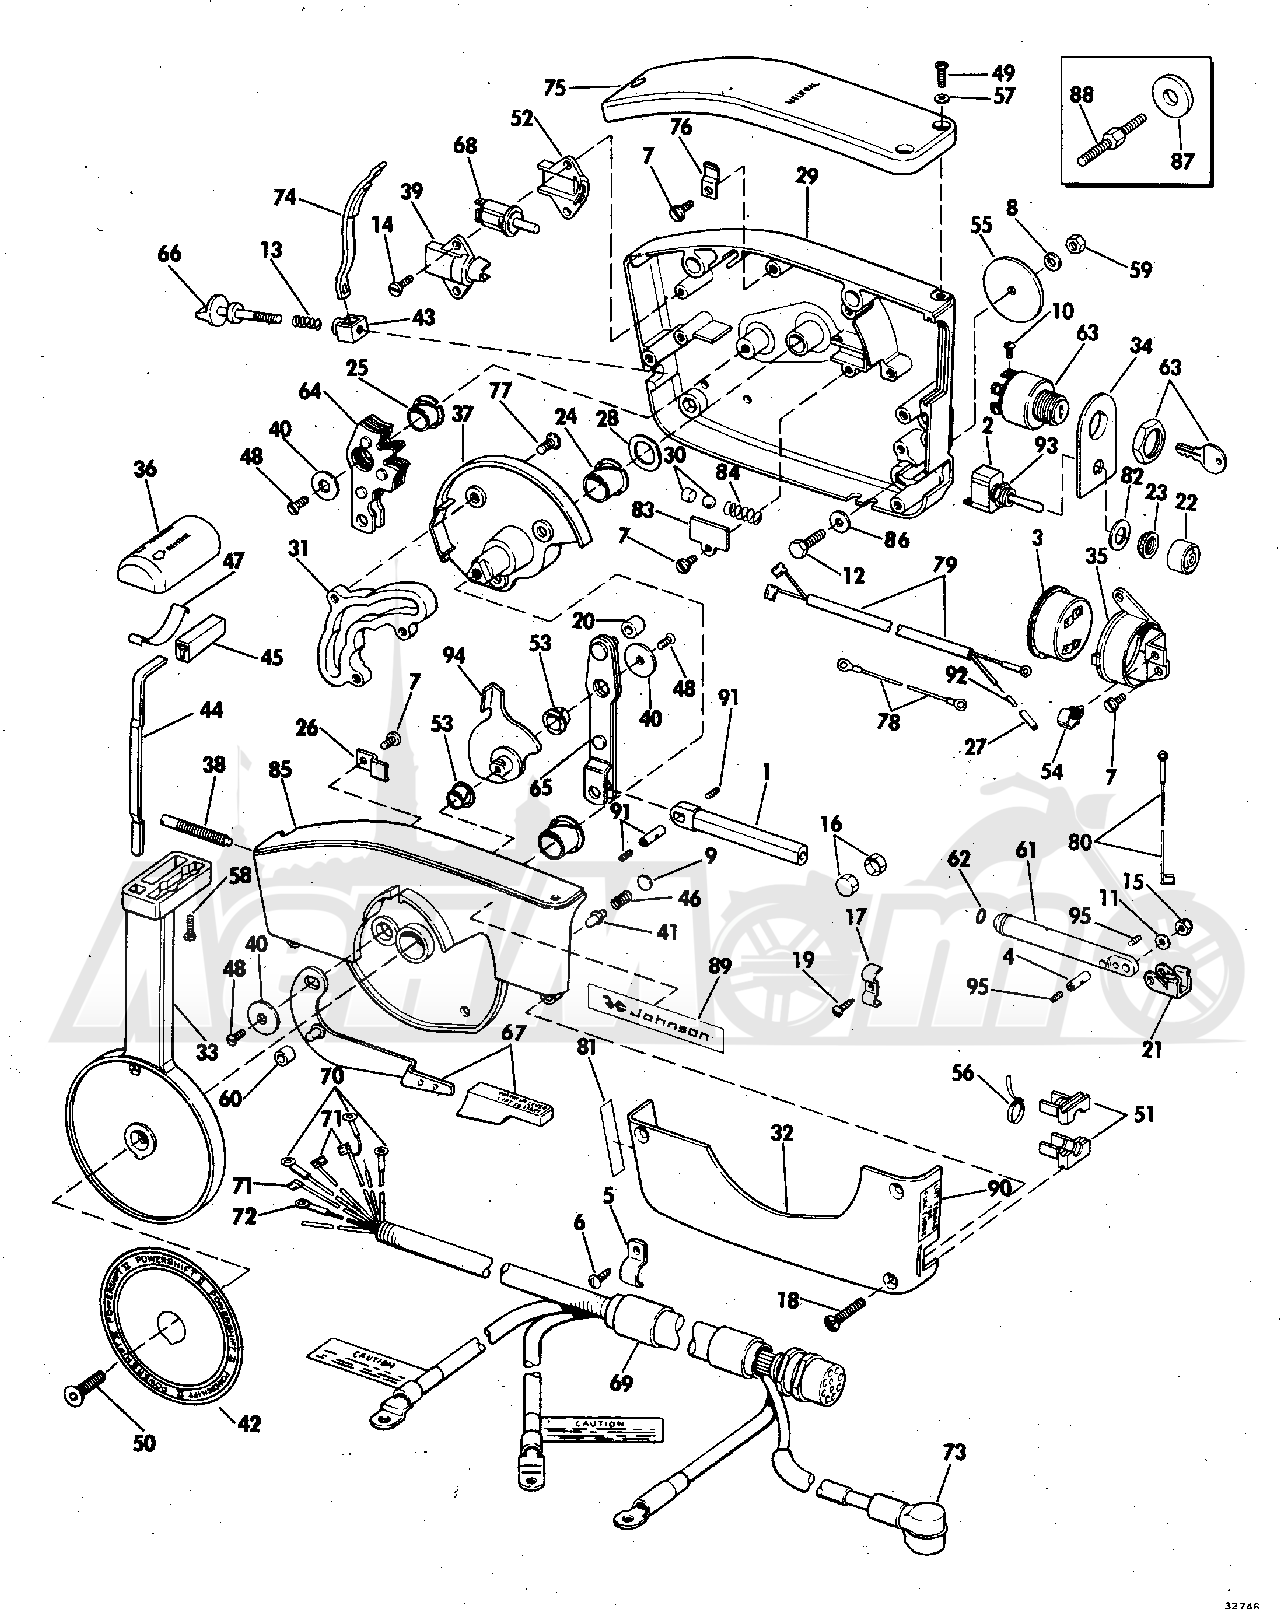 65esl_73r wiring diagram